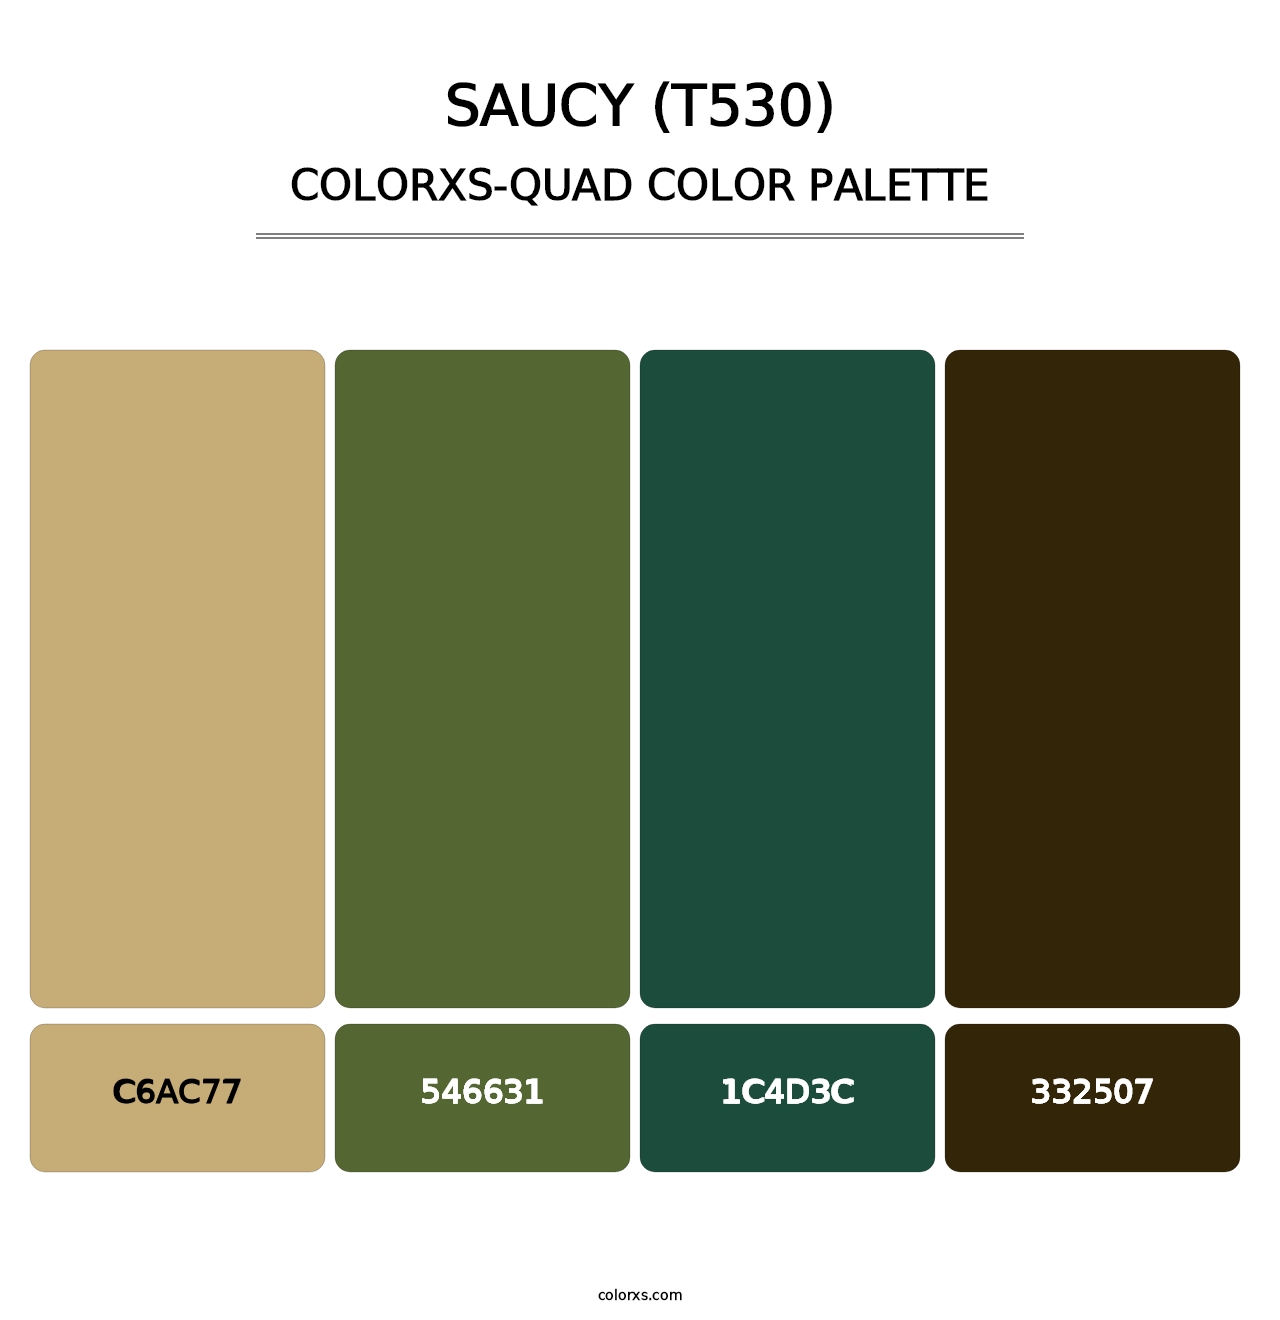 Saucy (T530) - Colorxs Quad Palette